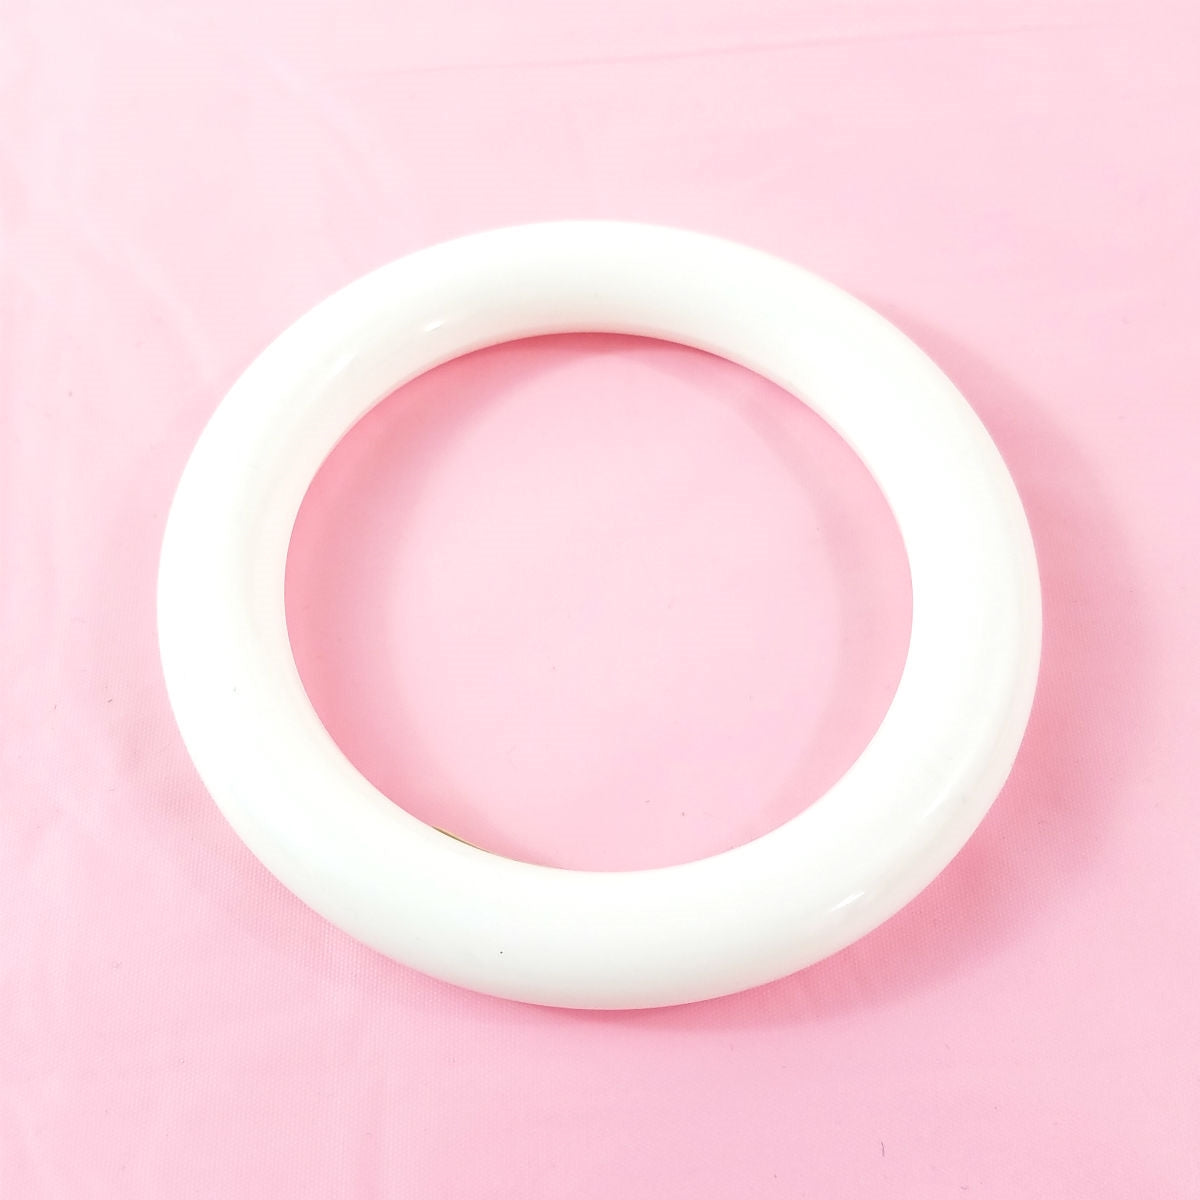 5/8" wide shiny plastic tubular shape bangle in bright white